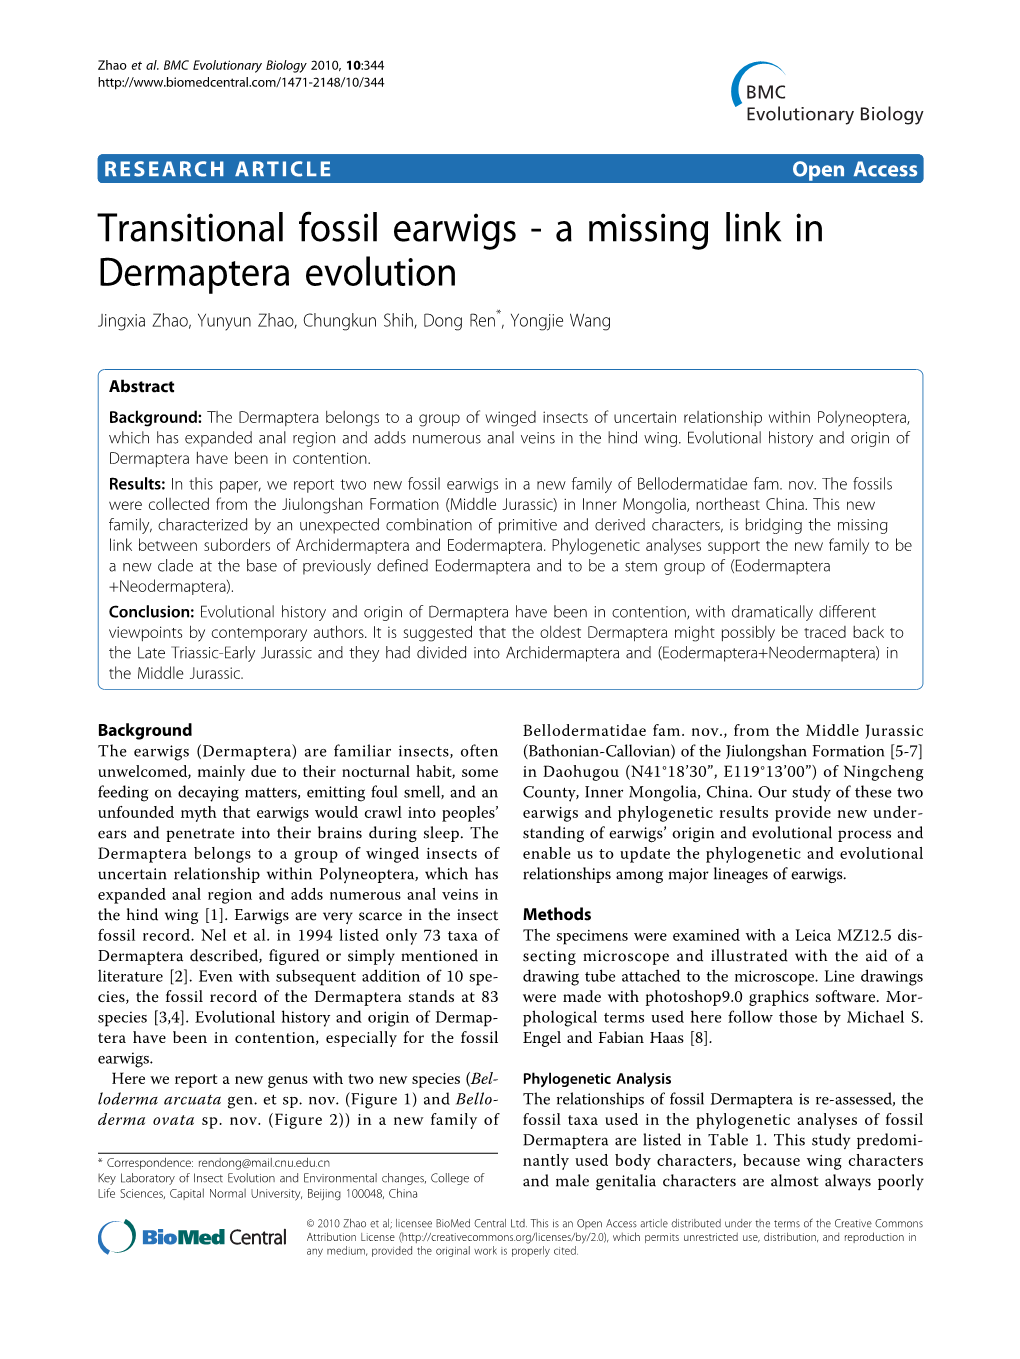 Transitional Fossil Earwigs - a Missing Link in Dermaptera Evolution Jingxia Zhao, Yunyun Zhao, Chungkun Shih, Dong Ren*, Yongjie Wang